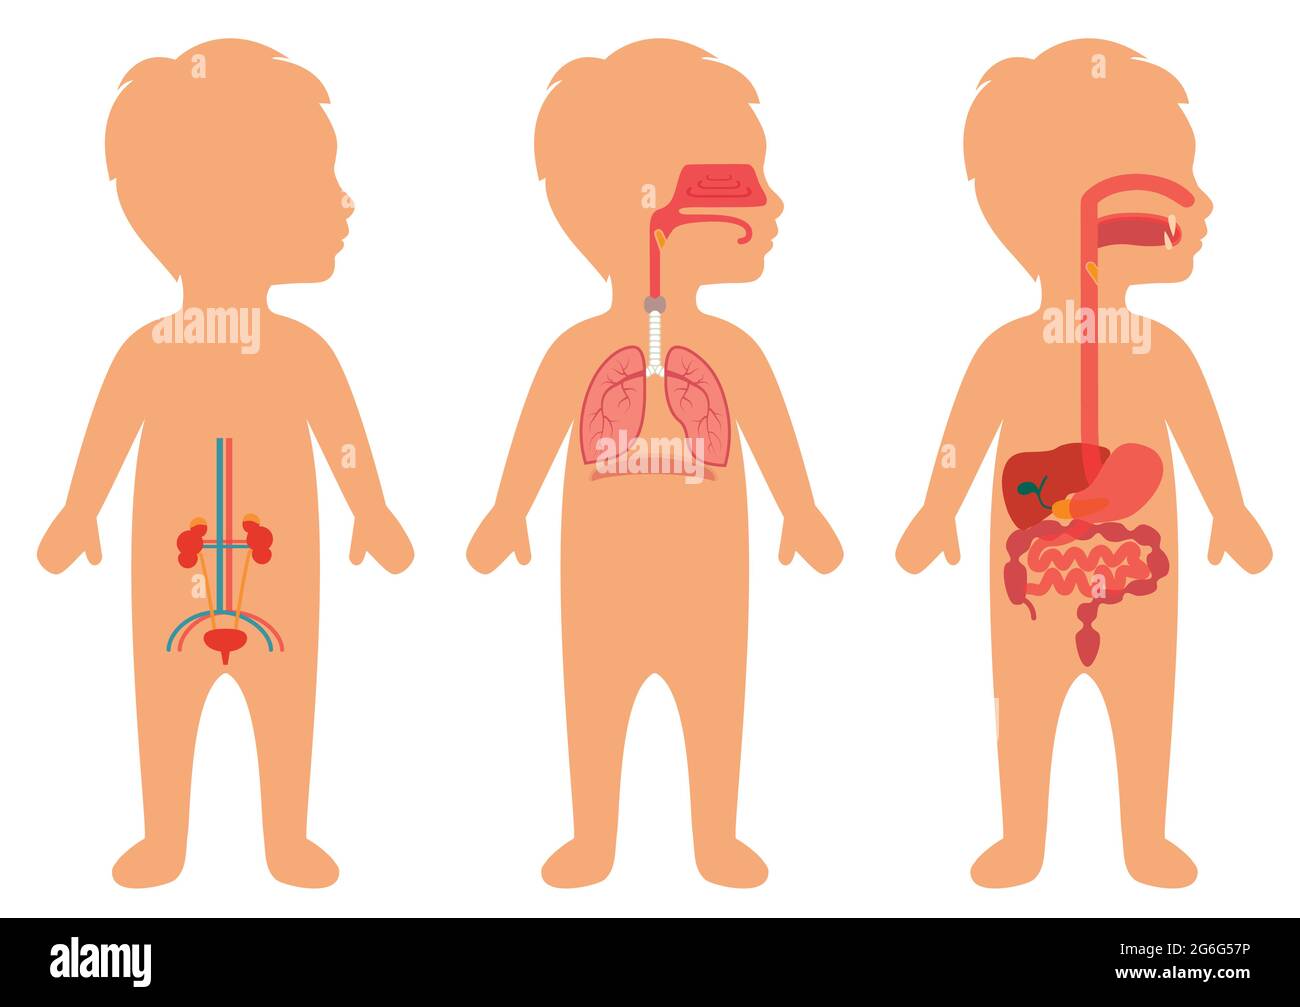 Kinderkörper, medizinische Illustration, menschliche Organe, kindliche  Anatomie Stock-Vektorgrafik - Alamy